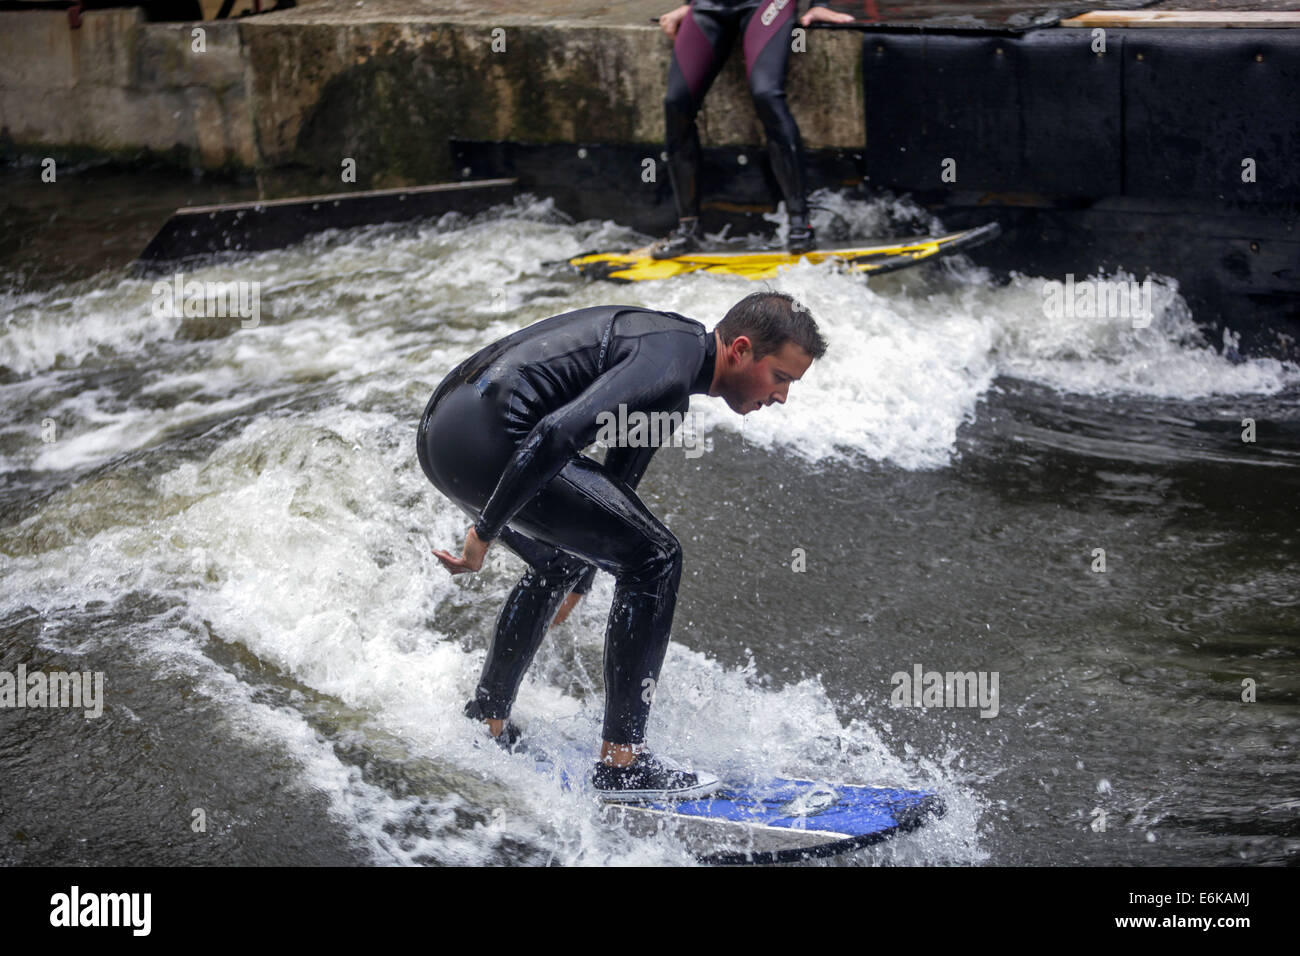 Les amateurs de la planche dans l'eau du canal de l'Elbe à Brandys nad Labem République Tchèque Banque D'Images